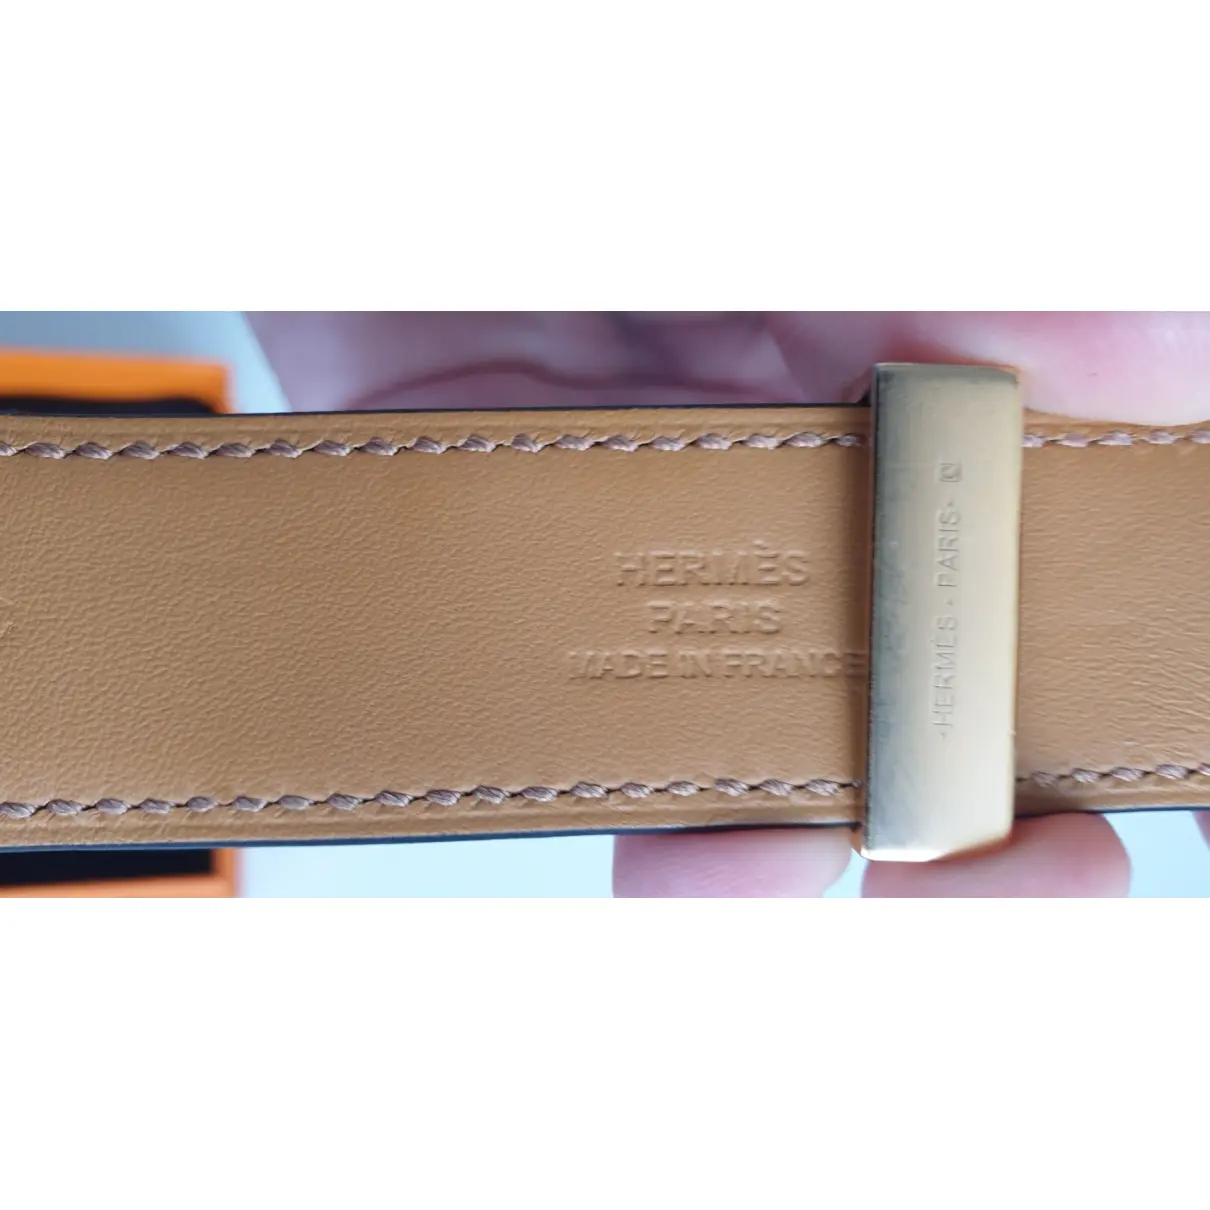 Collier de chien  leather bracelet Hermès